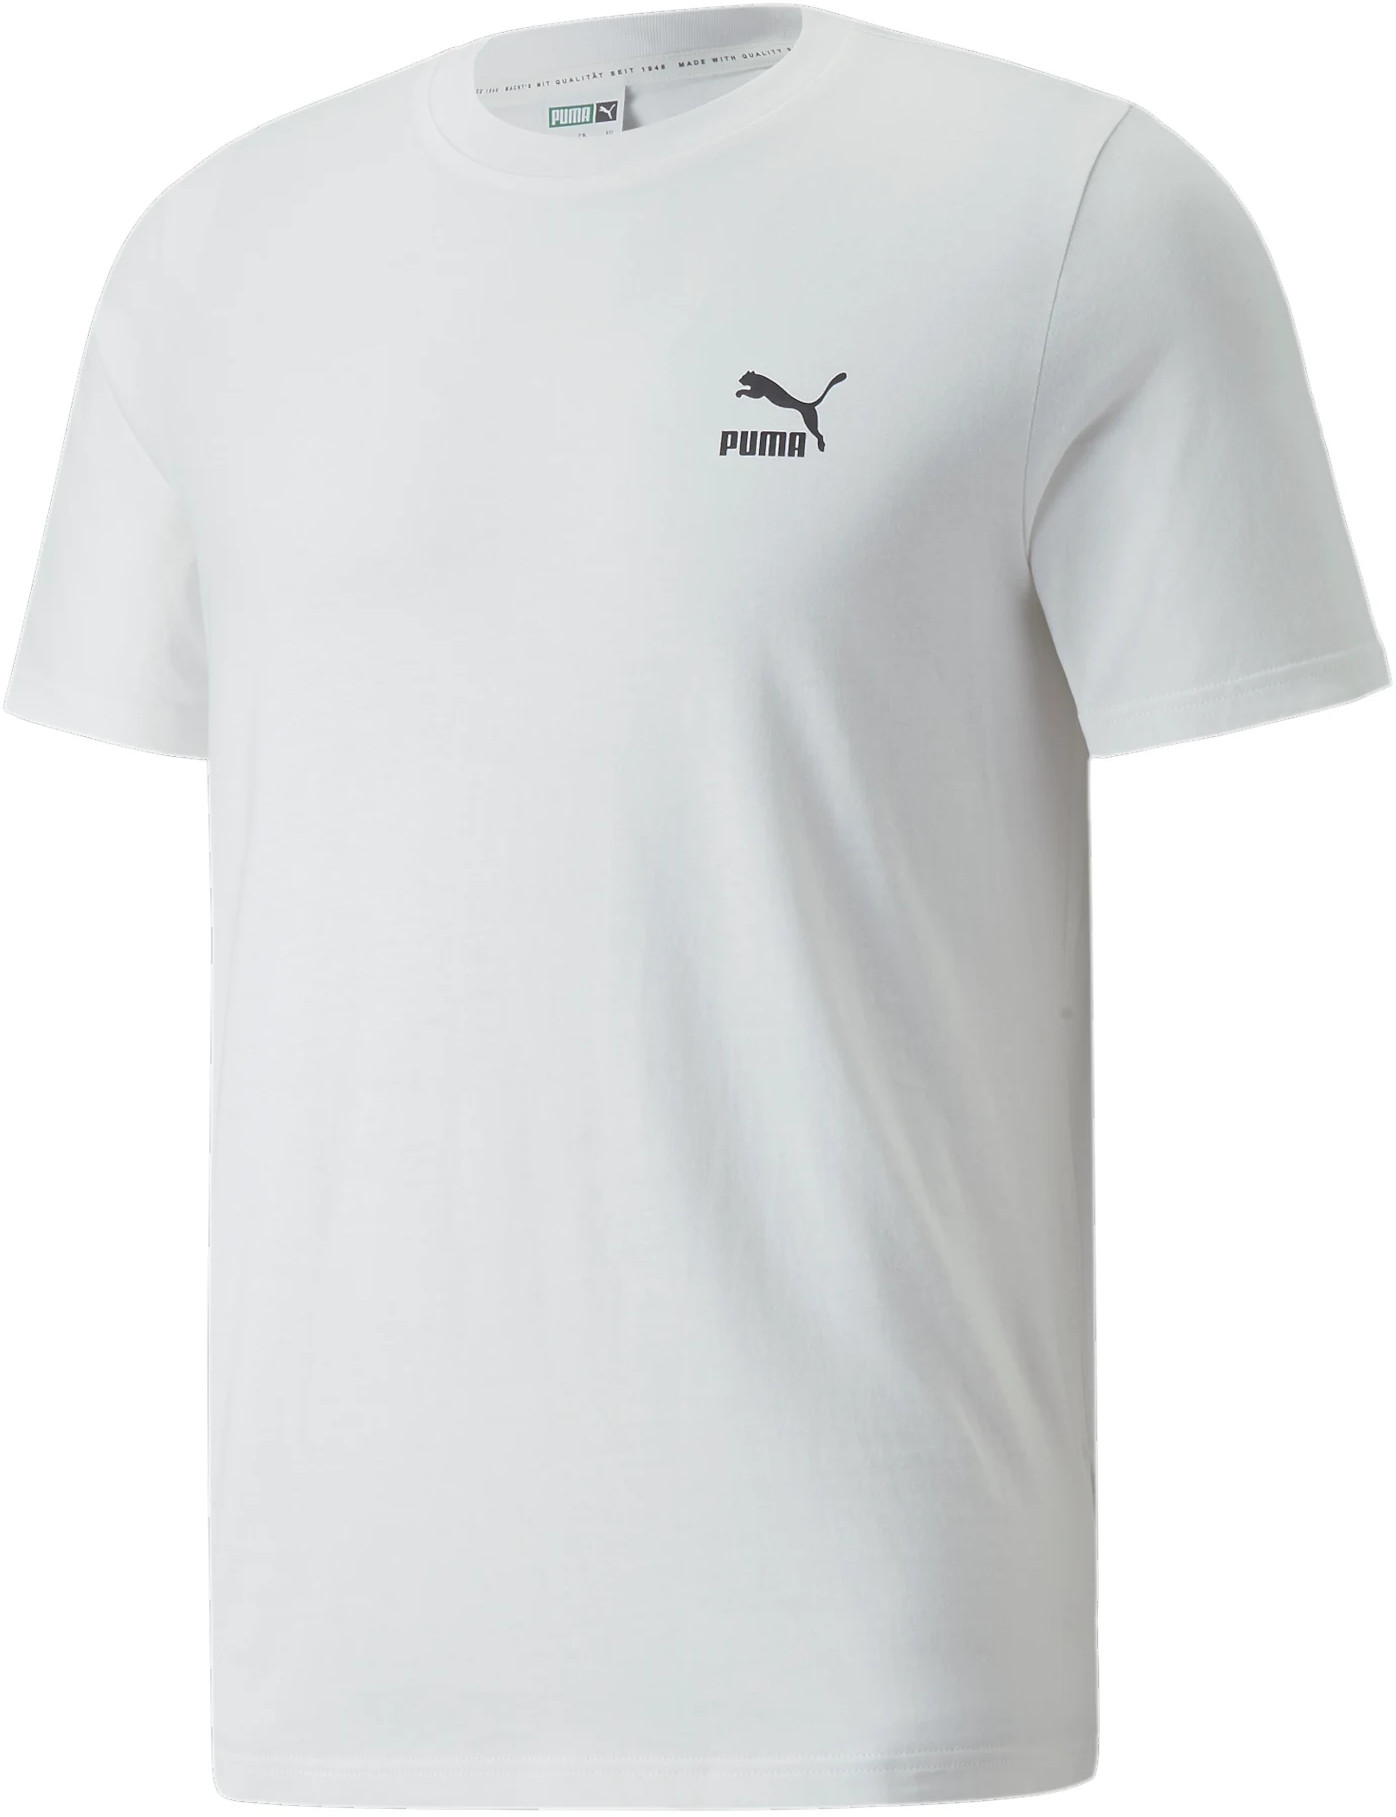 T-shirt Puma Classics Small Logo Tee Men